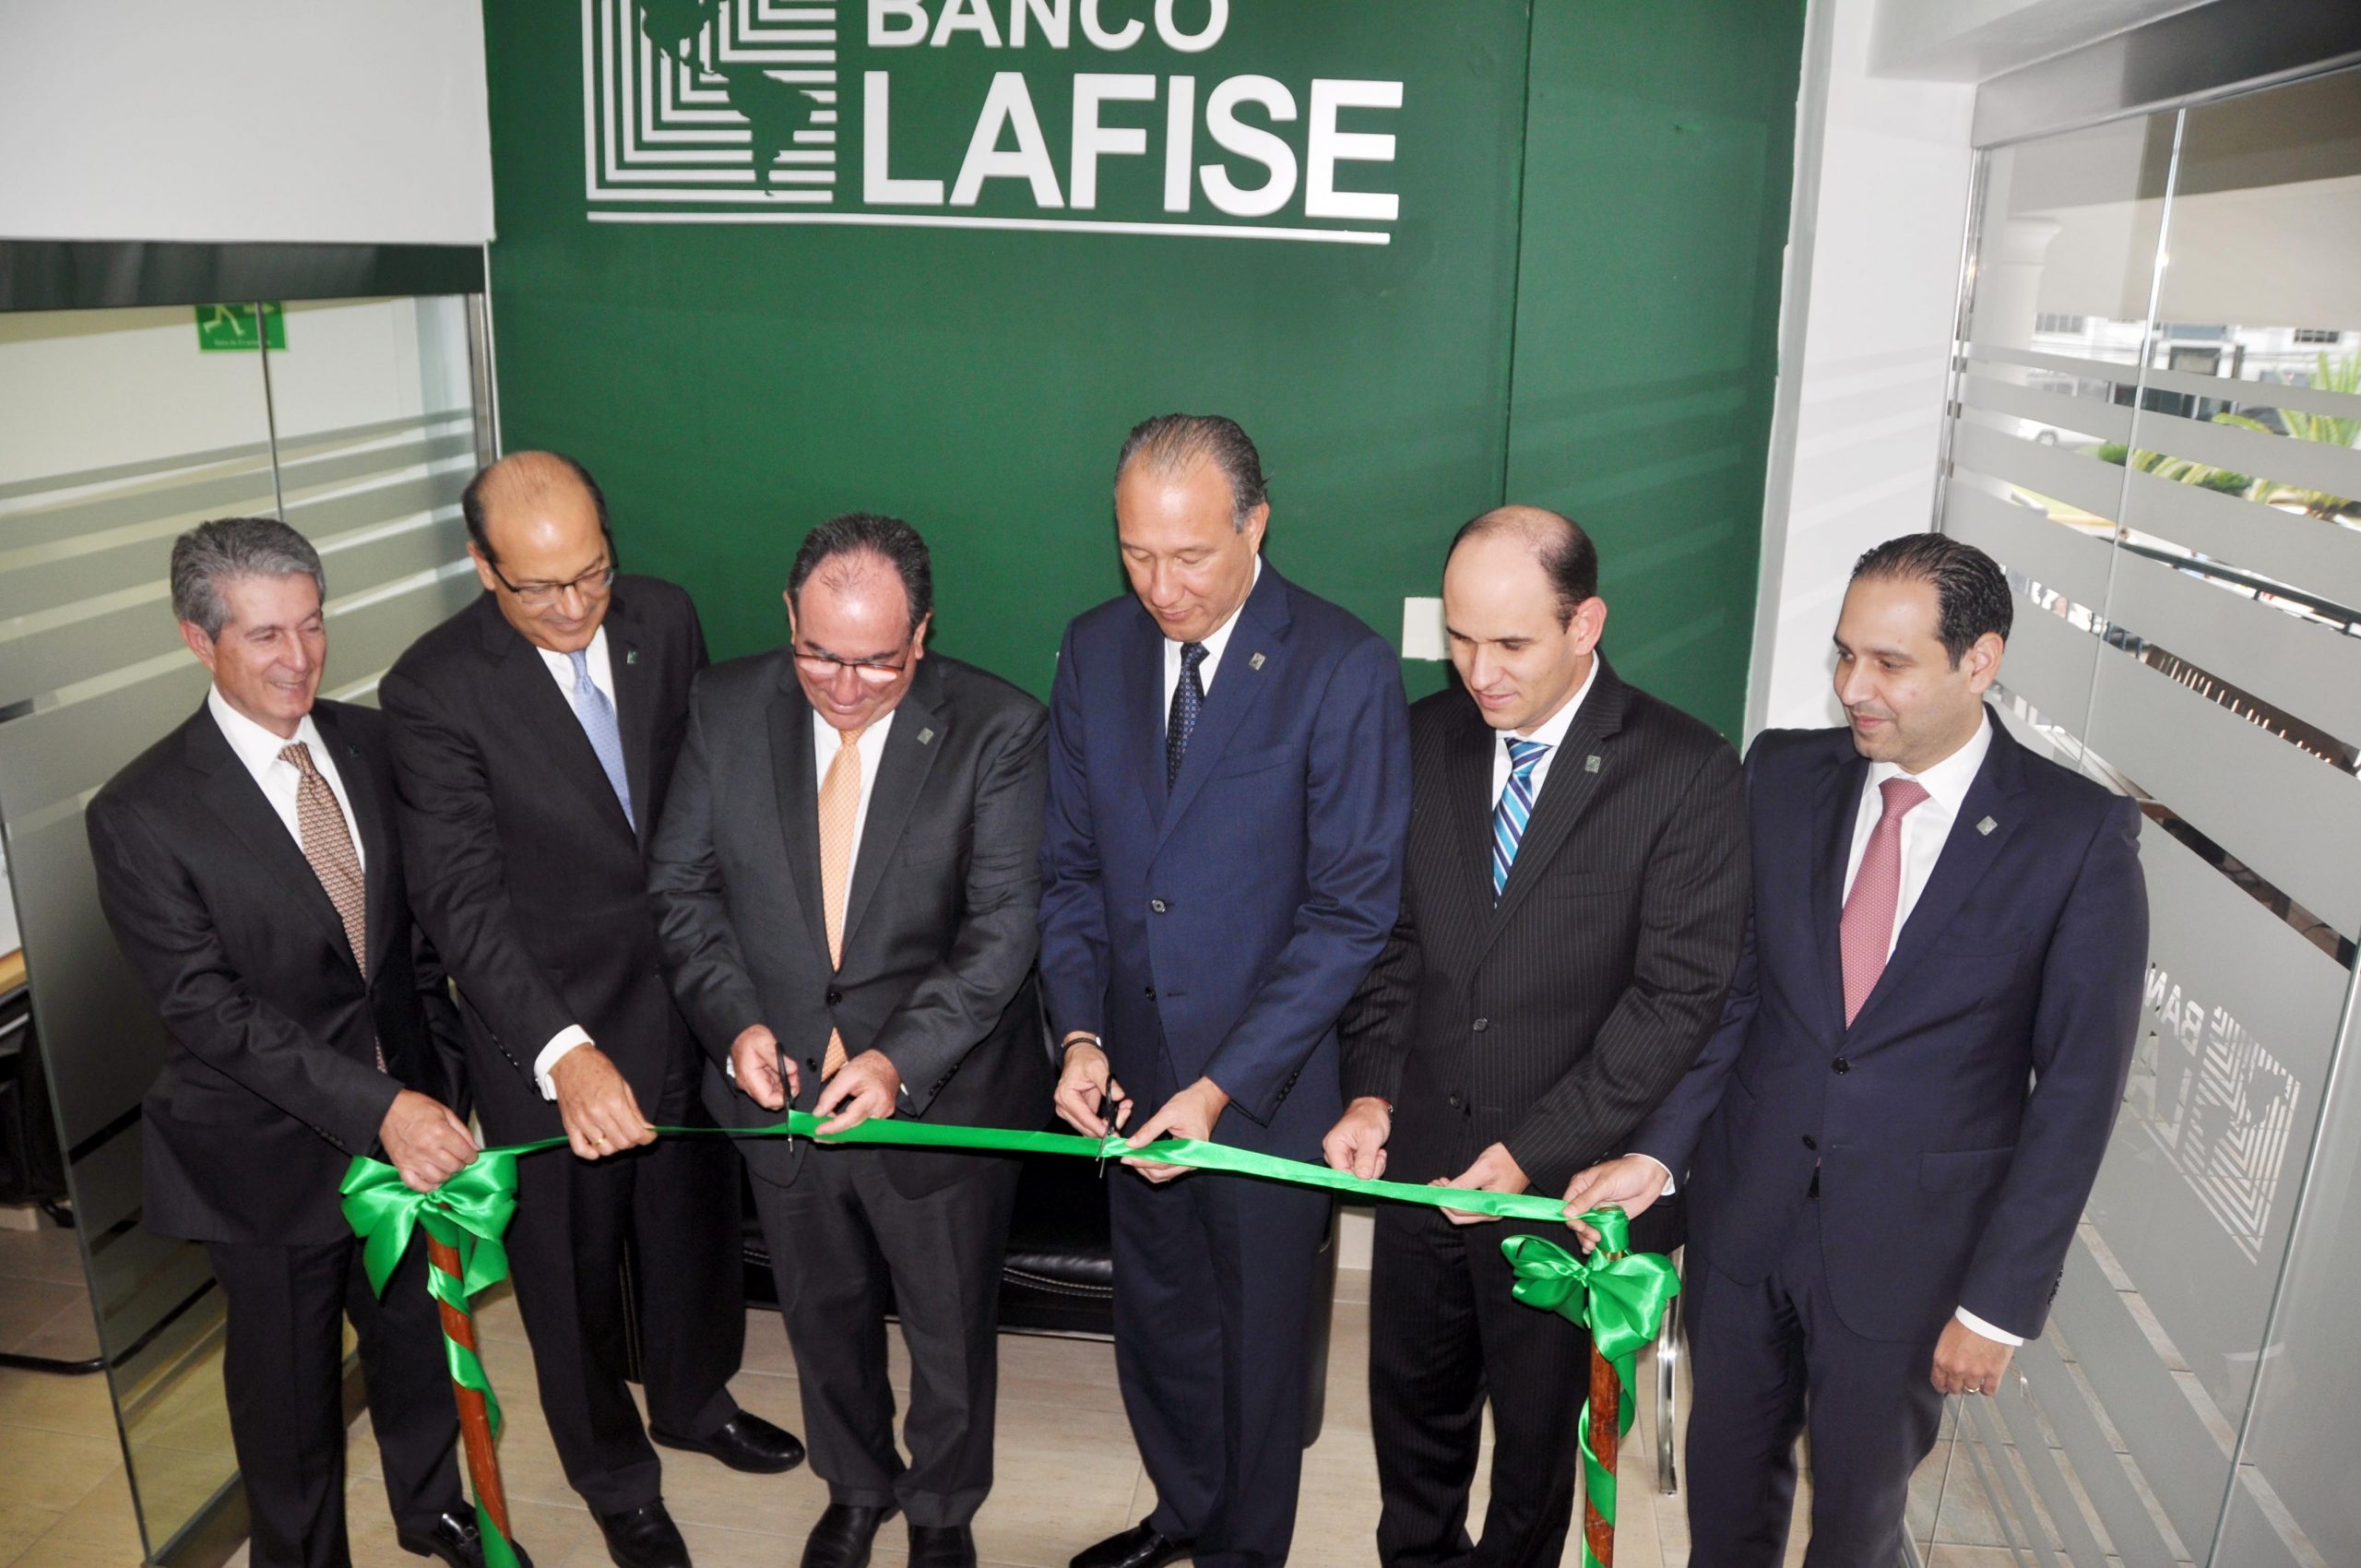 inauguración banco lafise en santiago